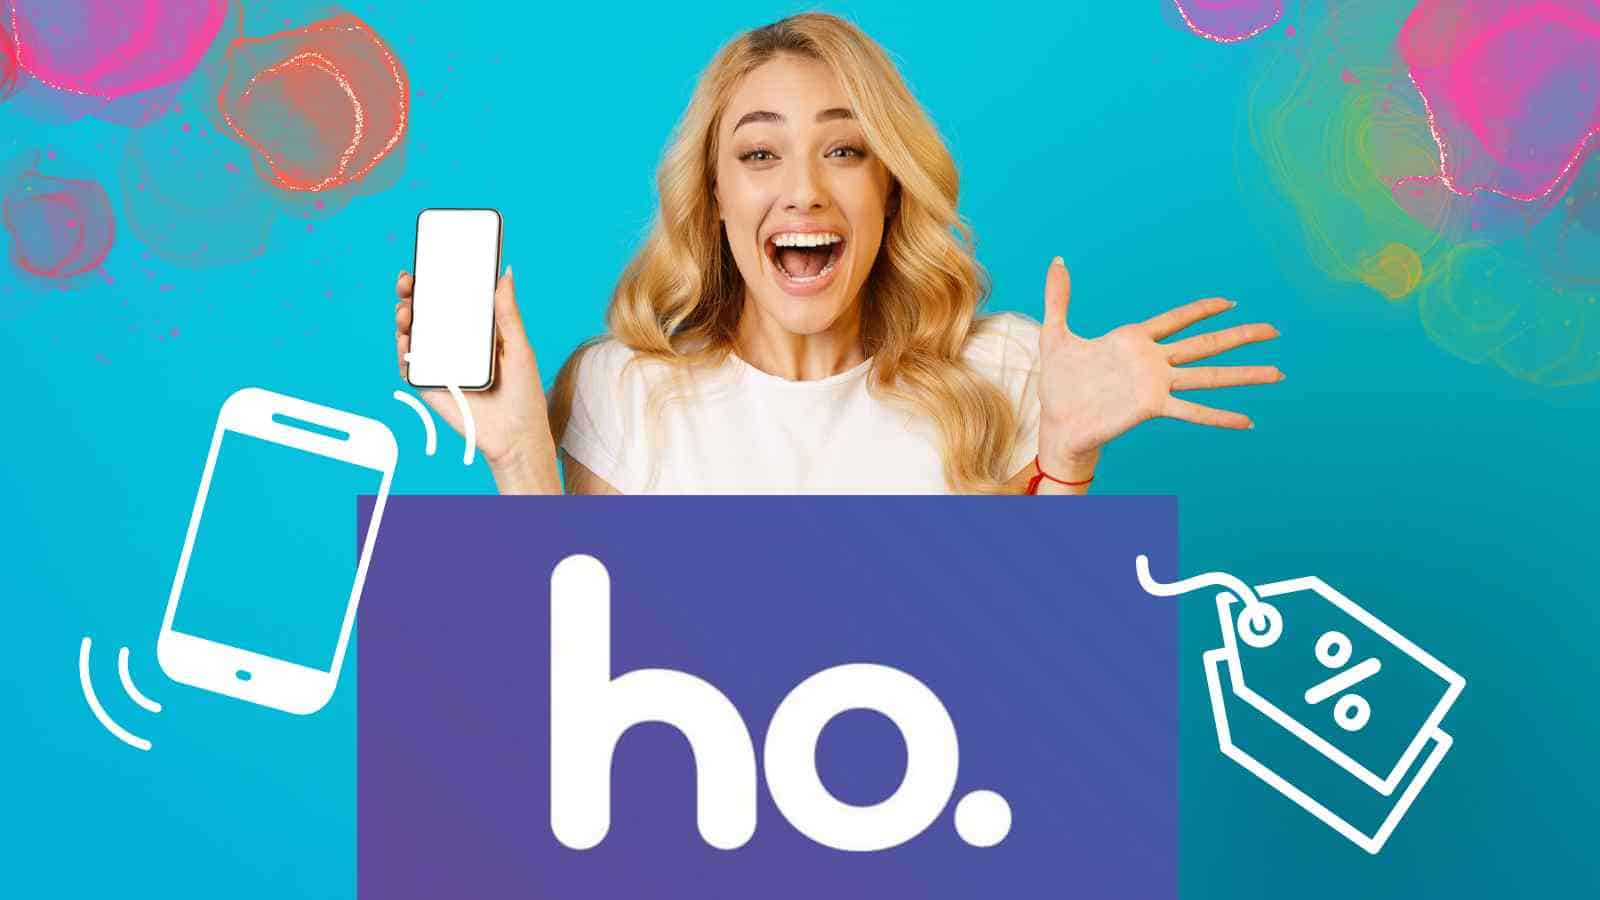 Le nuove offerte di Ho Mobile sono incredibili, corri a dare un'occhiata!